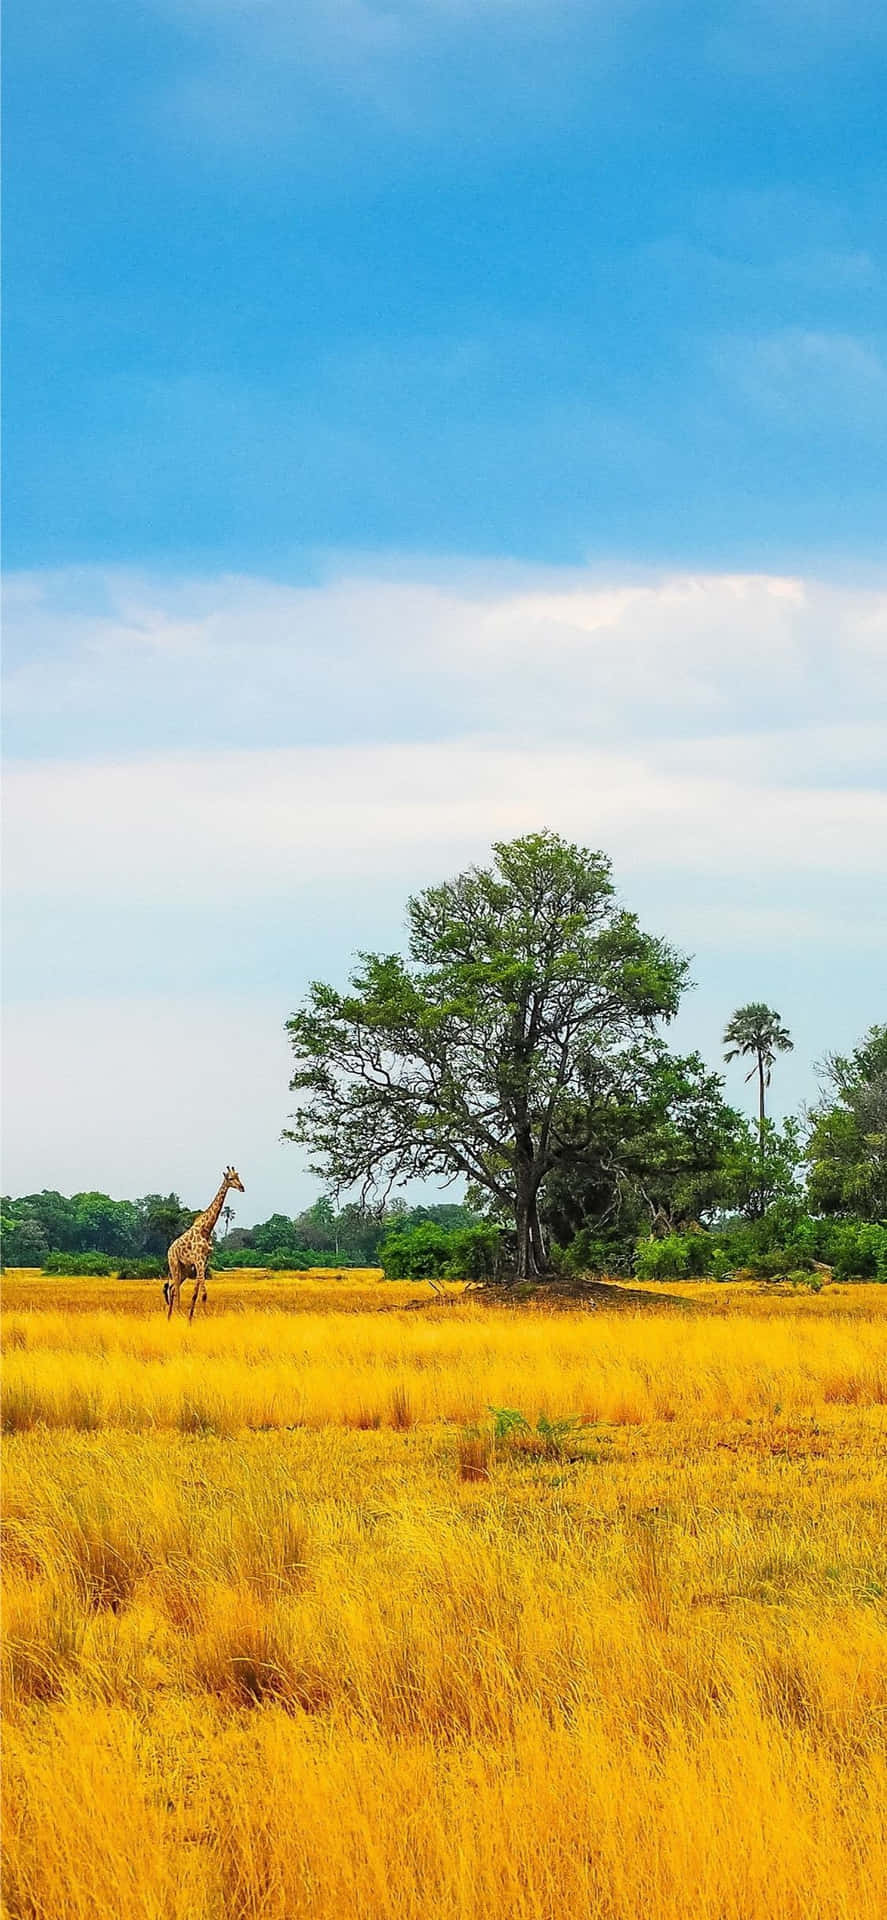 a giraffe in a field